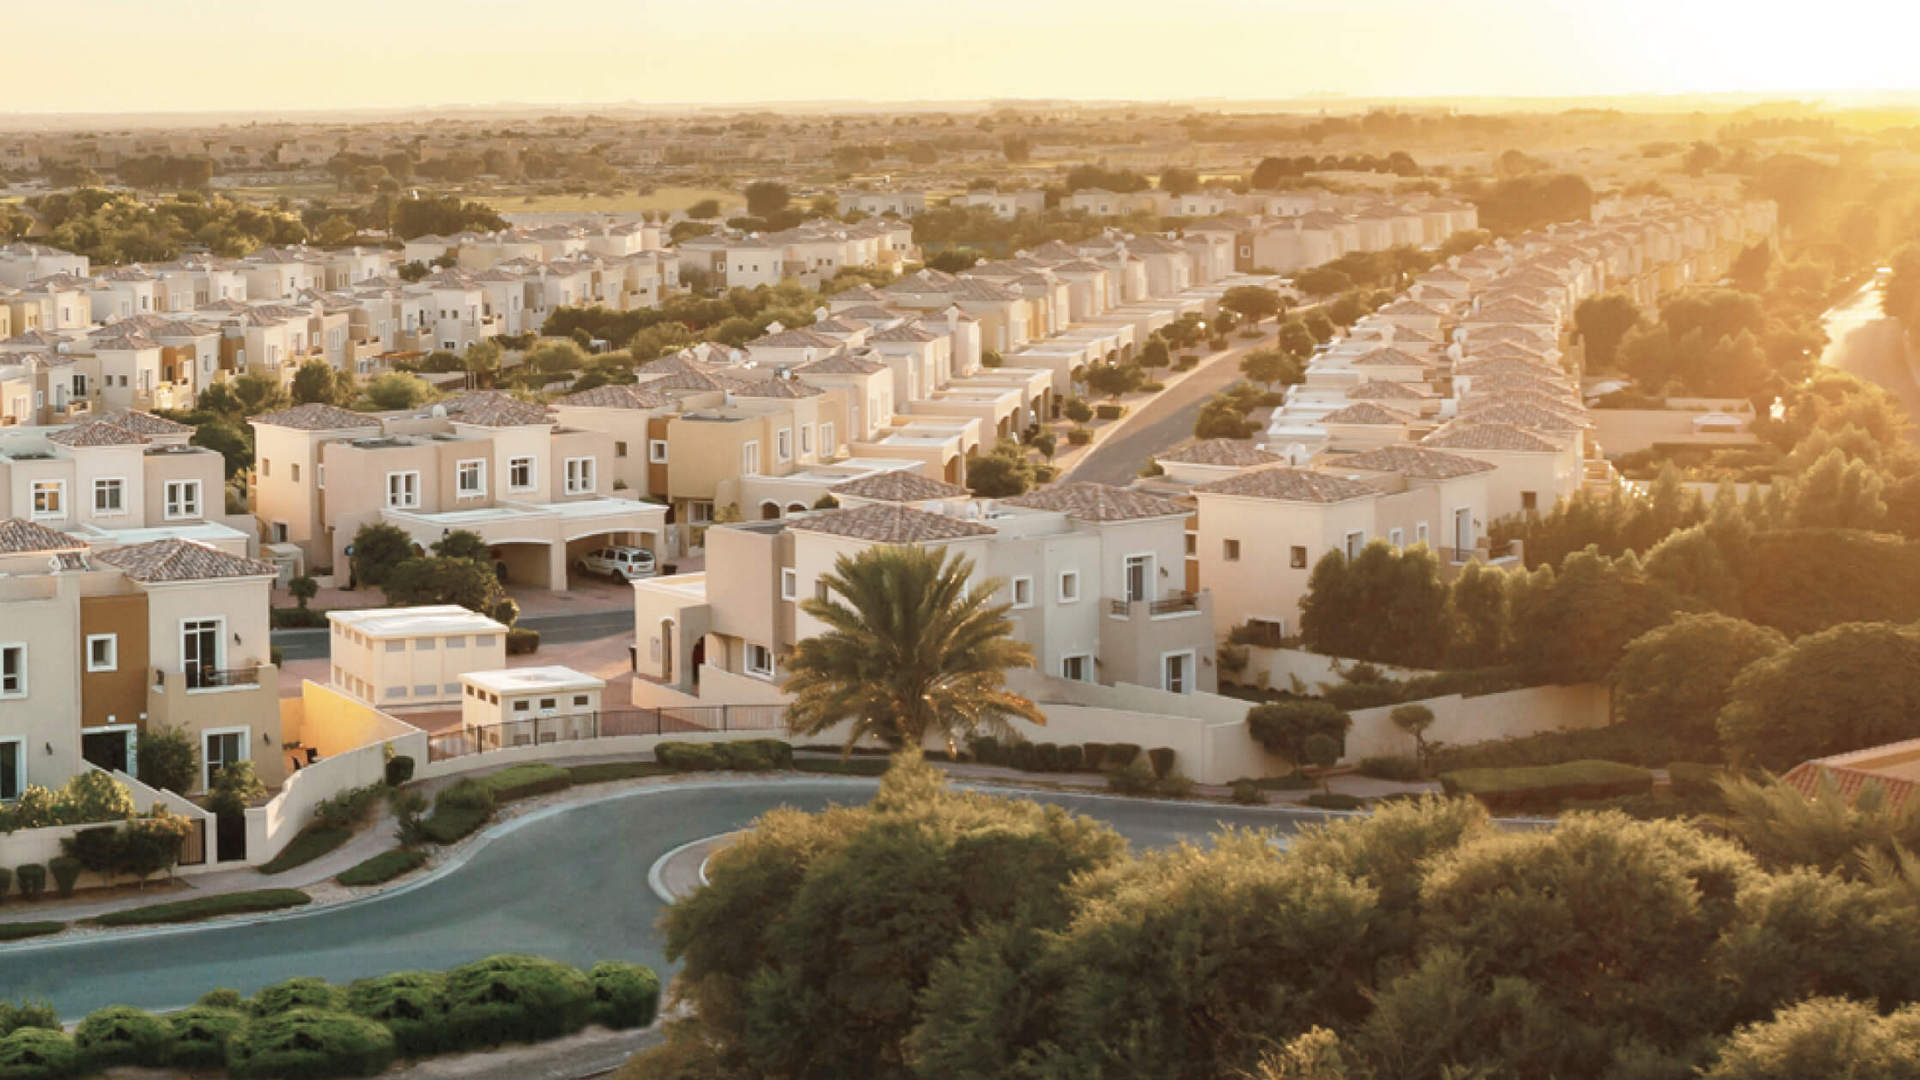 ANYA 2 TOWNHOUSES by Emaar Properties in Arabian Ranches 3, Dubai, UAE - 2